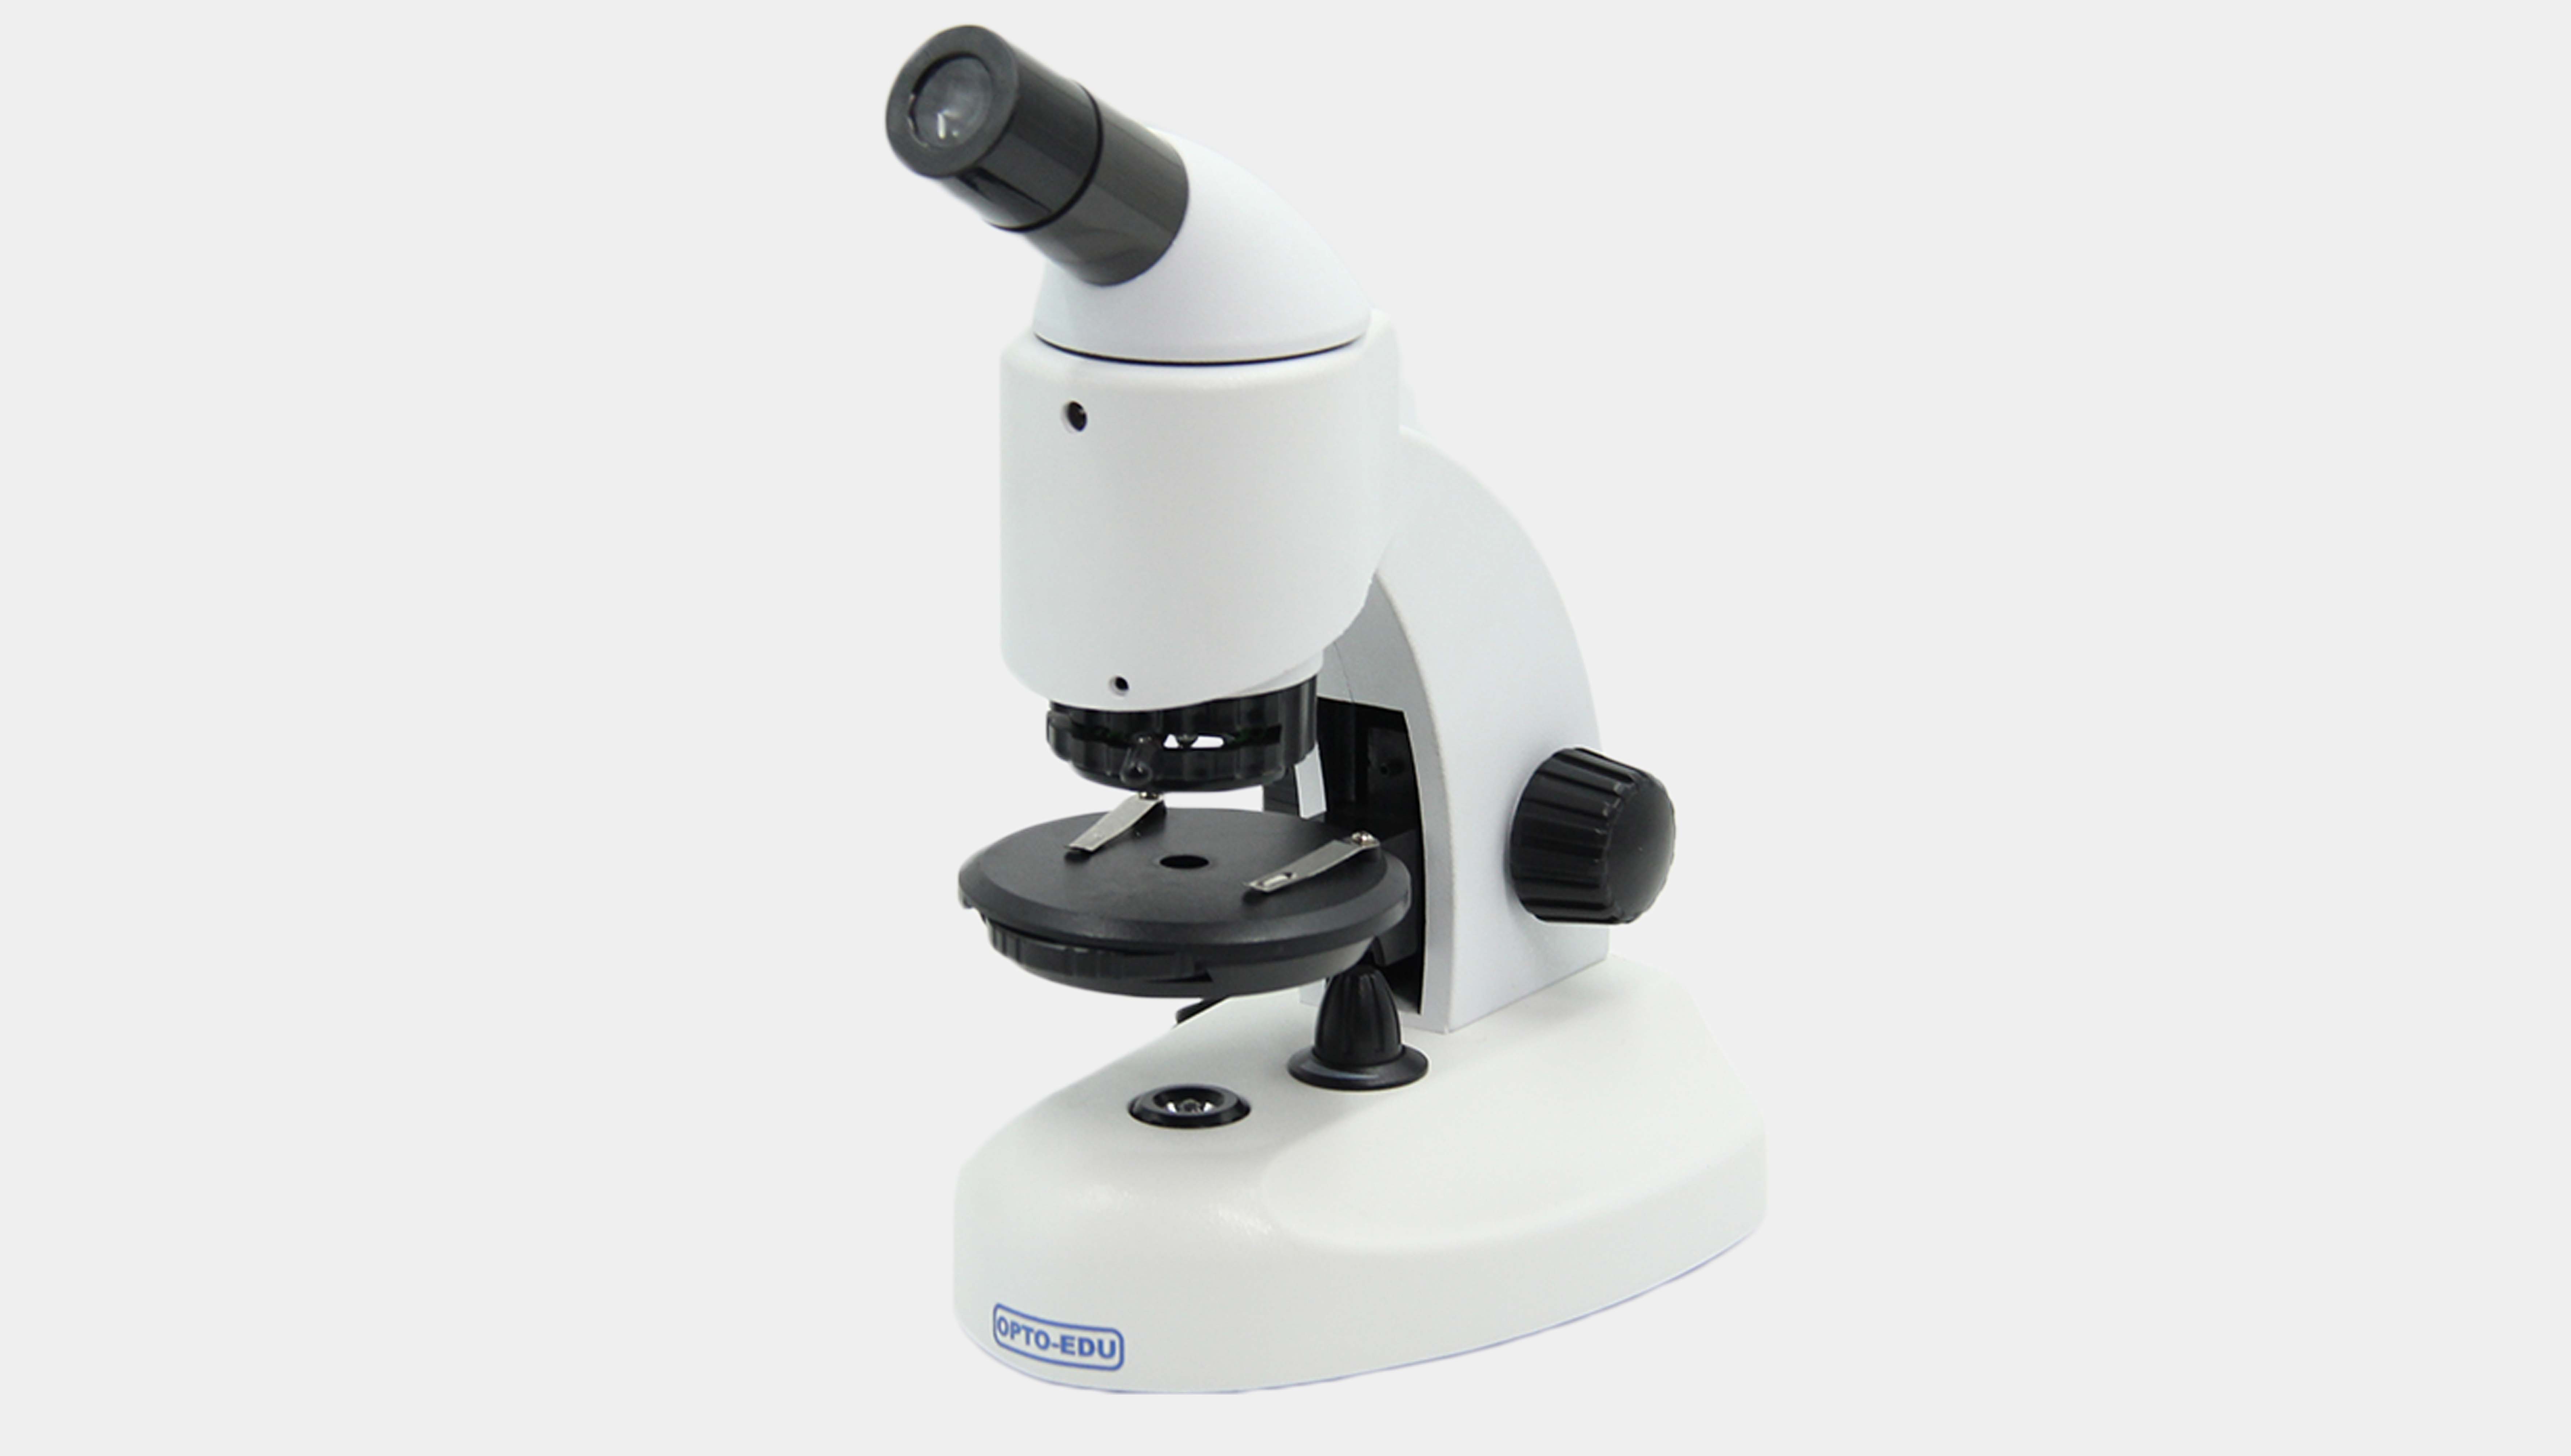 A11.1526 Microscope biologique + stéréo pour enfants